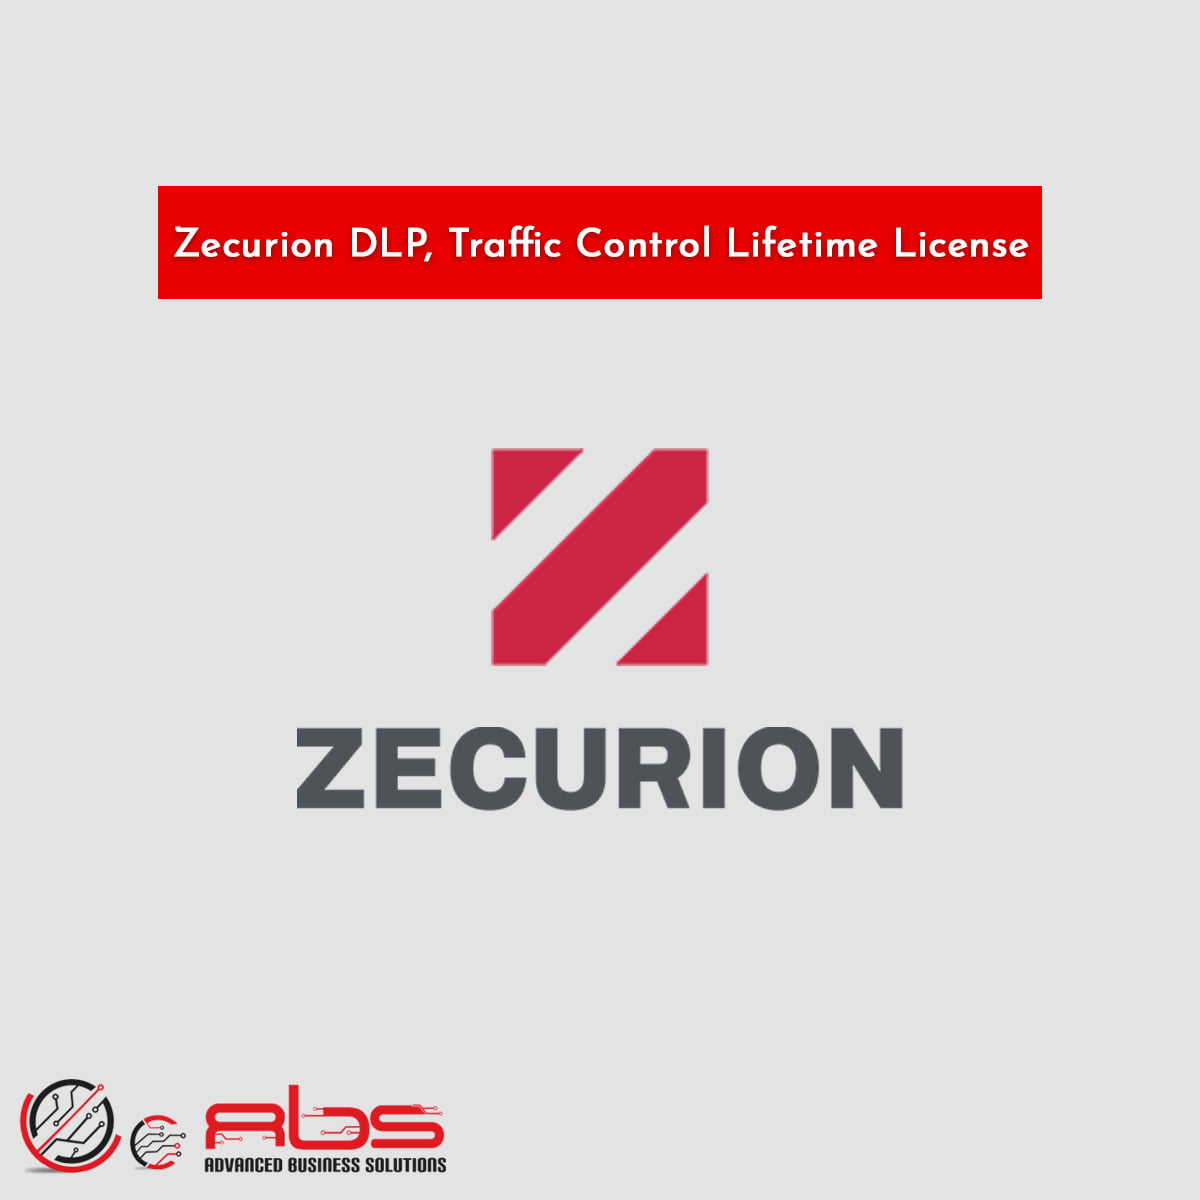 Zecurion DLP, Traffic Control Lifetime License